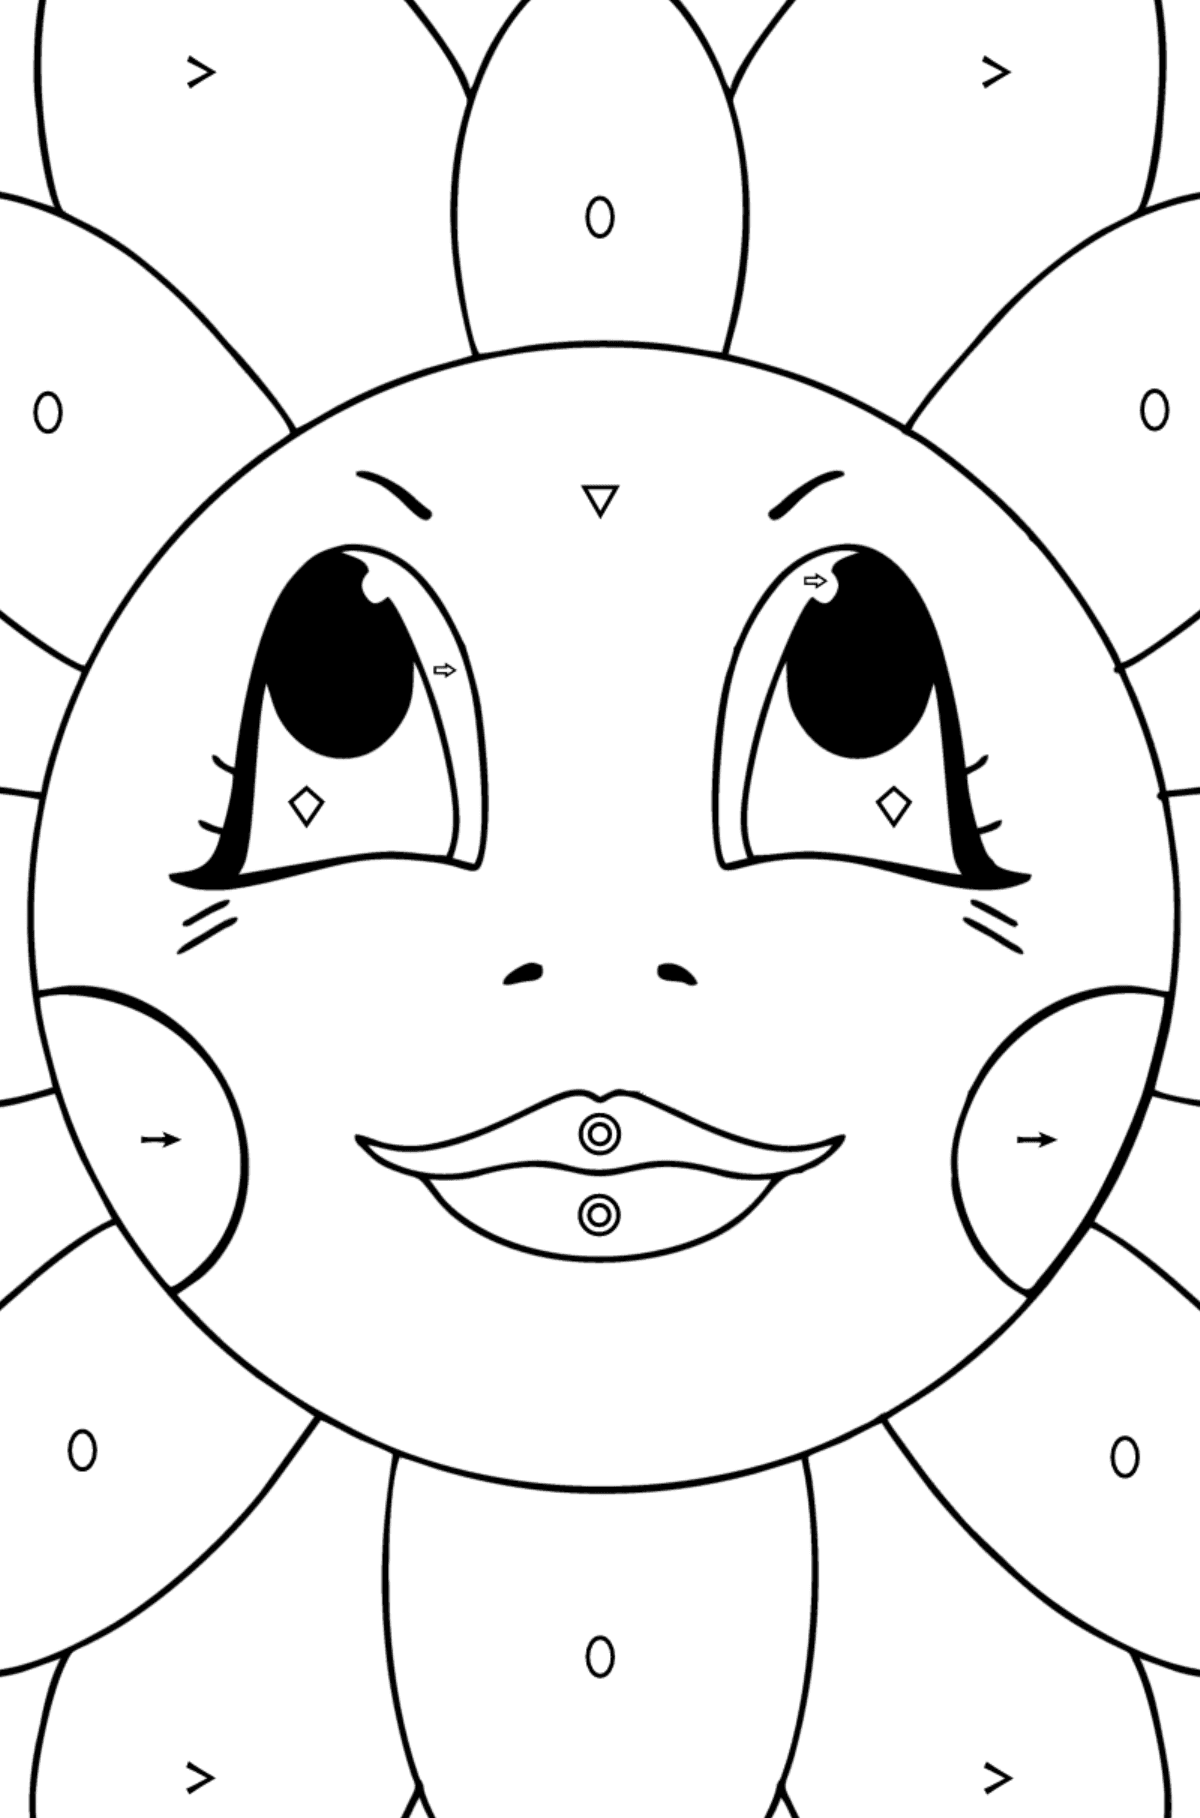 Tegning til fargelegging Kamille med øyne - Fargelegge etter symboler og geometriske former for barn